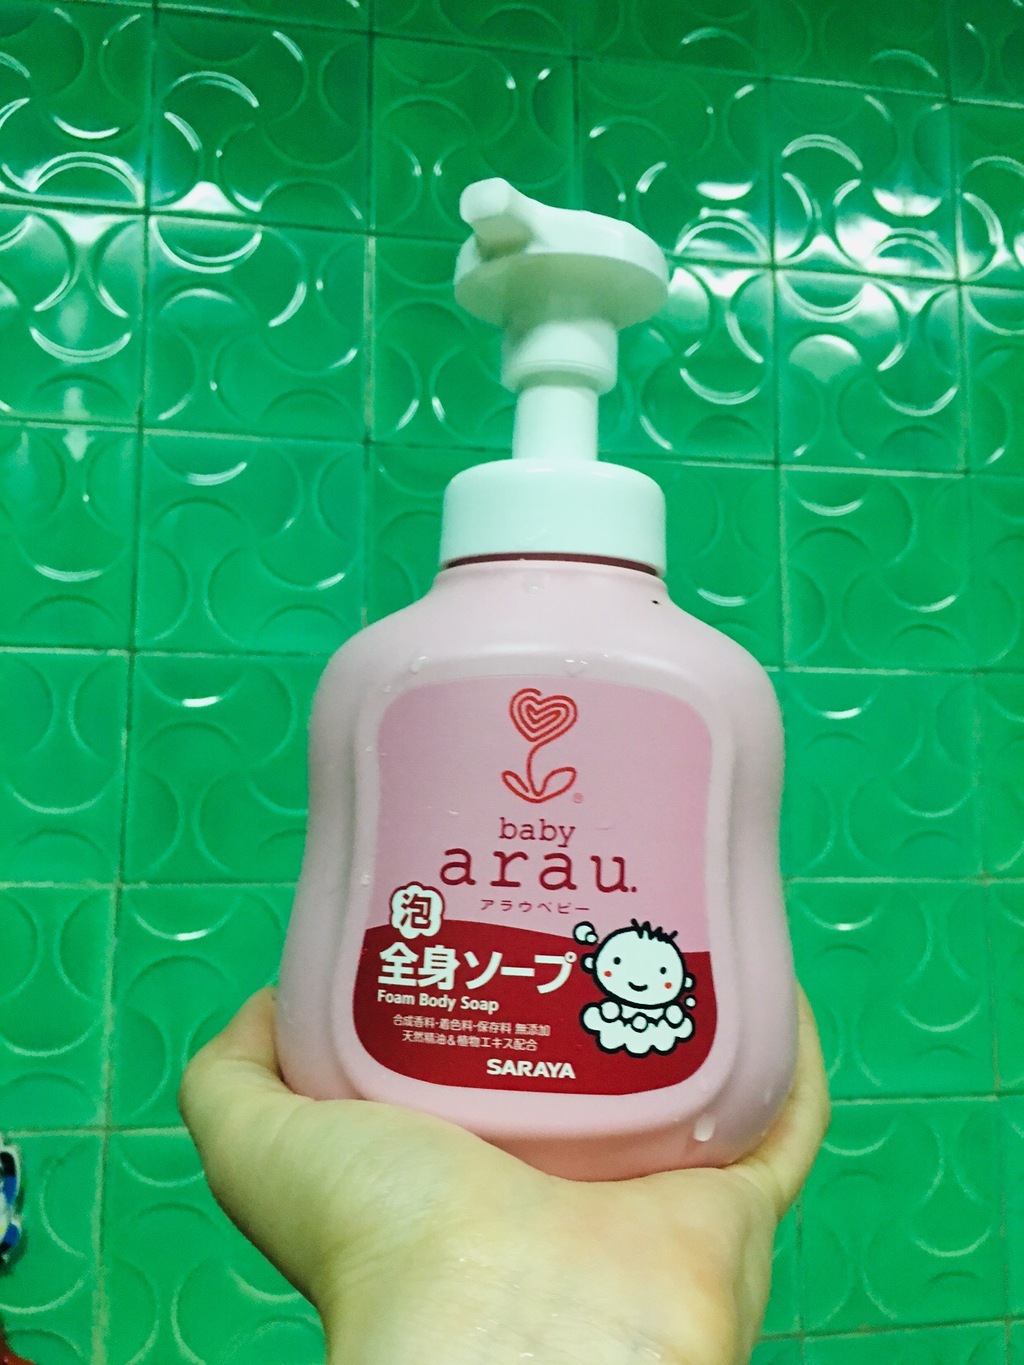 arau. baby body soap